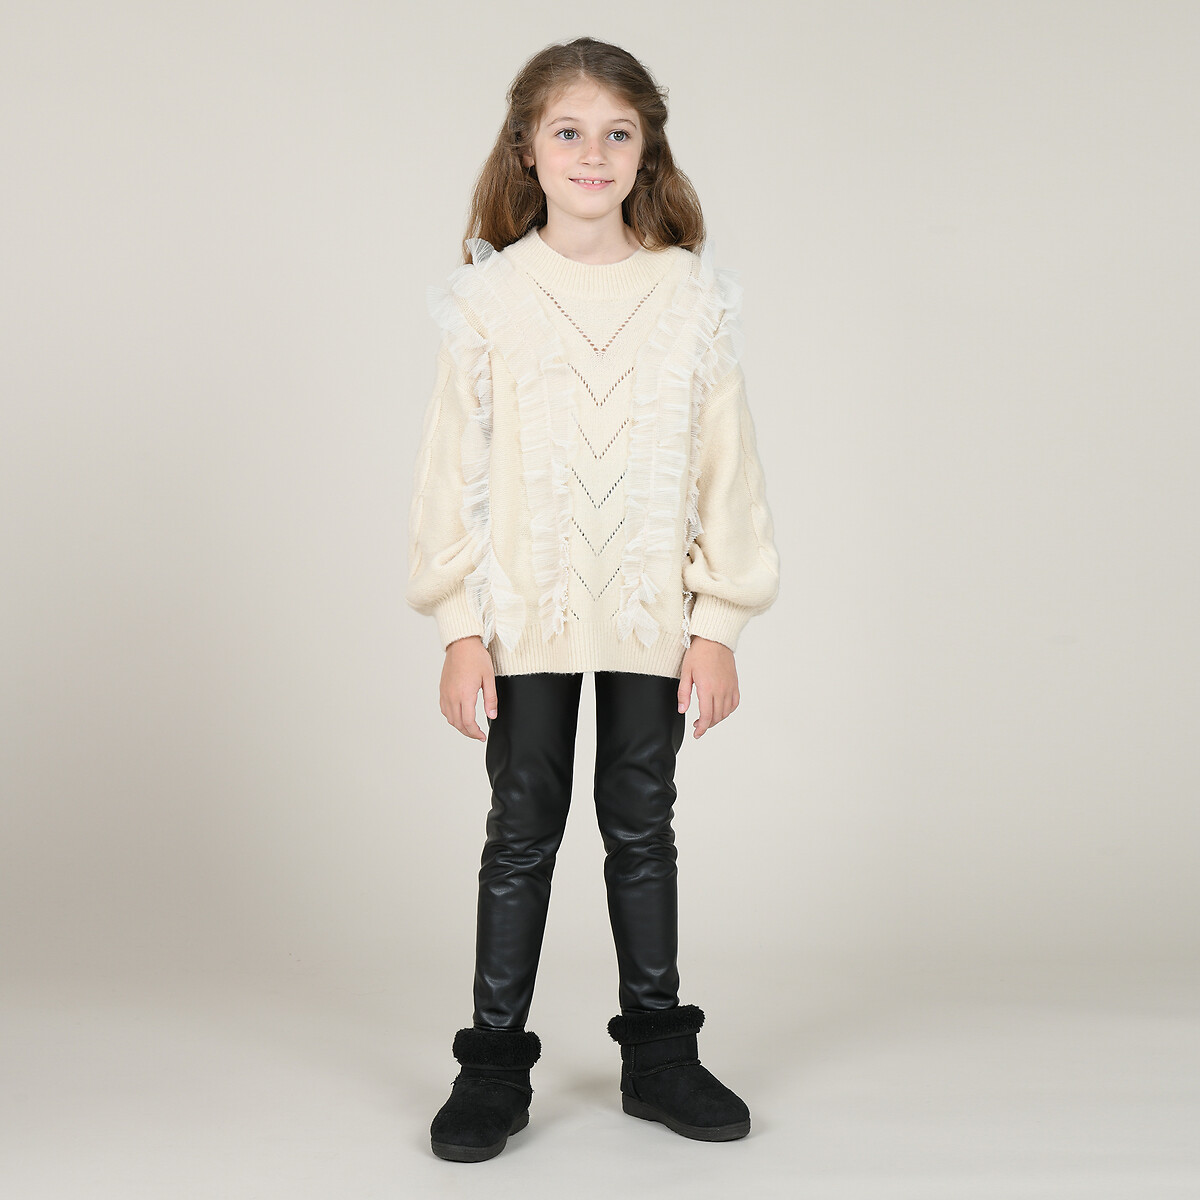 Пуловер La Redoute 4-14 лет 12/14 лет - 150/156 см белый, размер 12/14 лет - 150/156 см